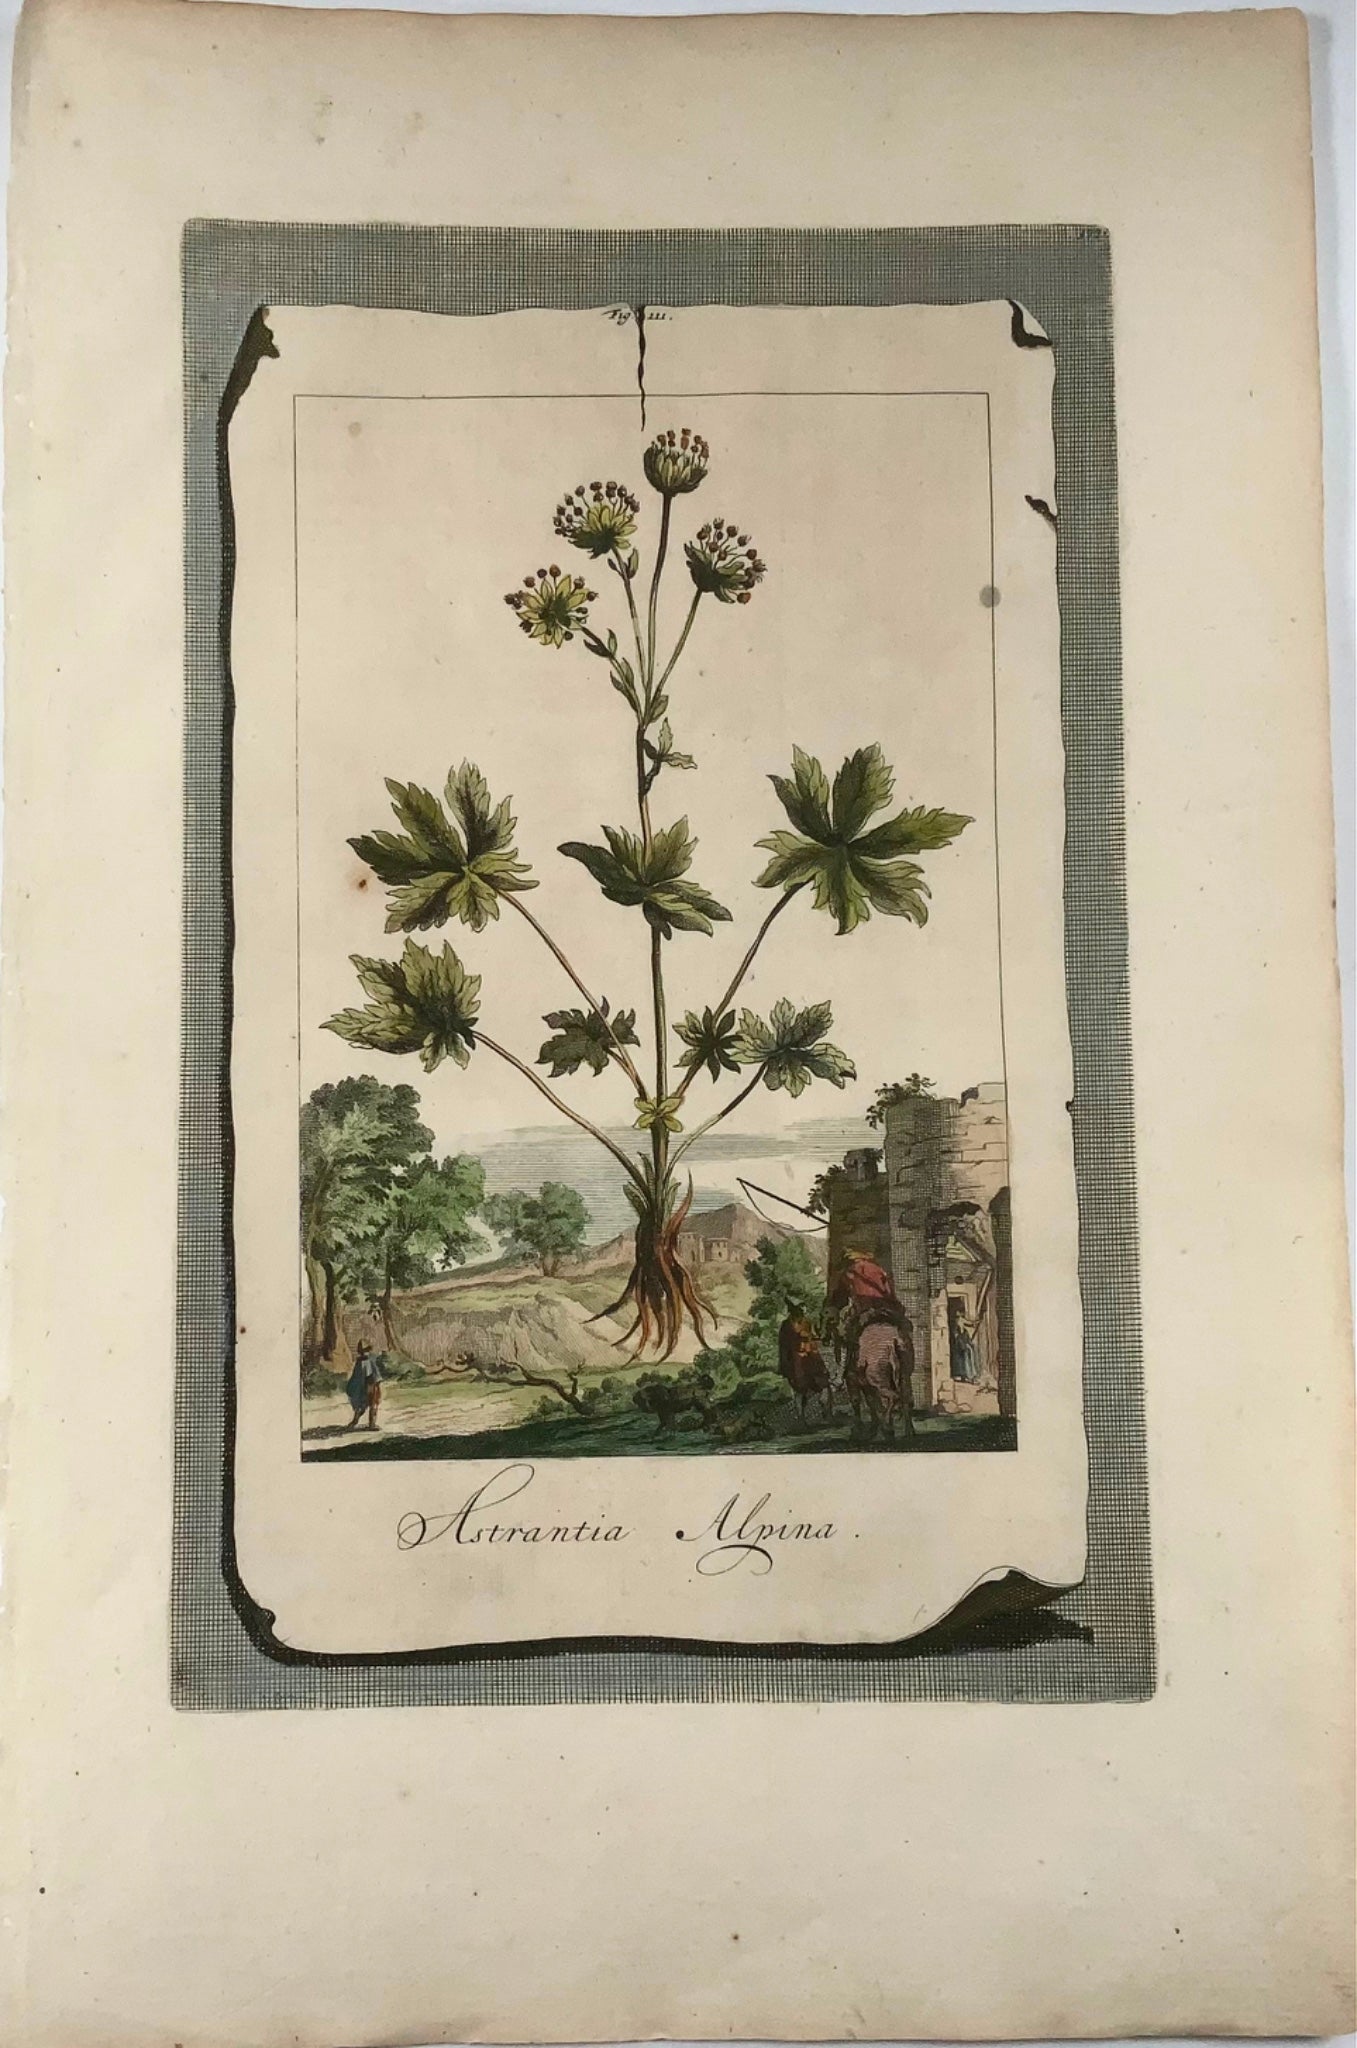 1696 Astrantia Alpina, grand folio, botanique, Abraham Munting, grand folio